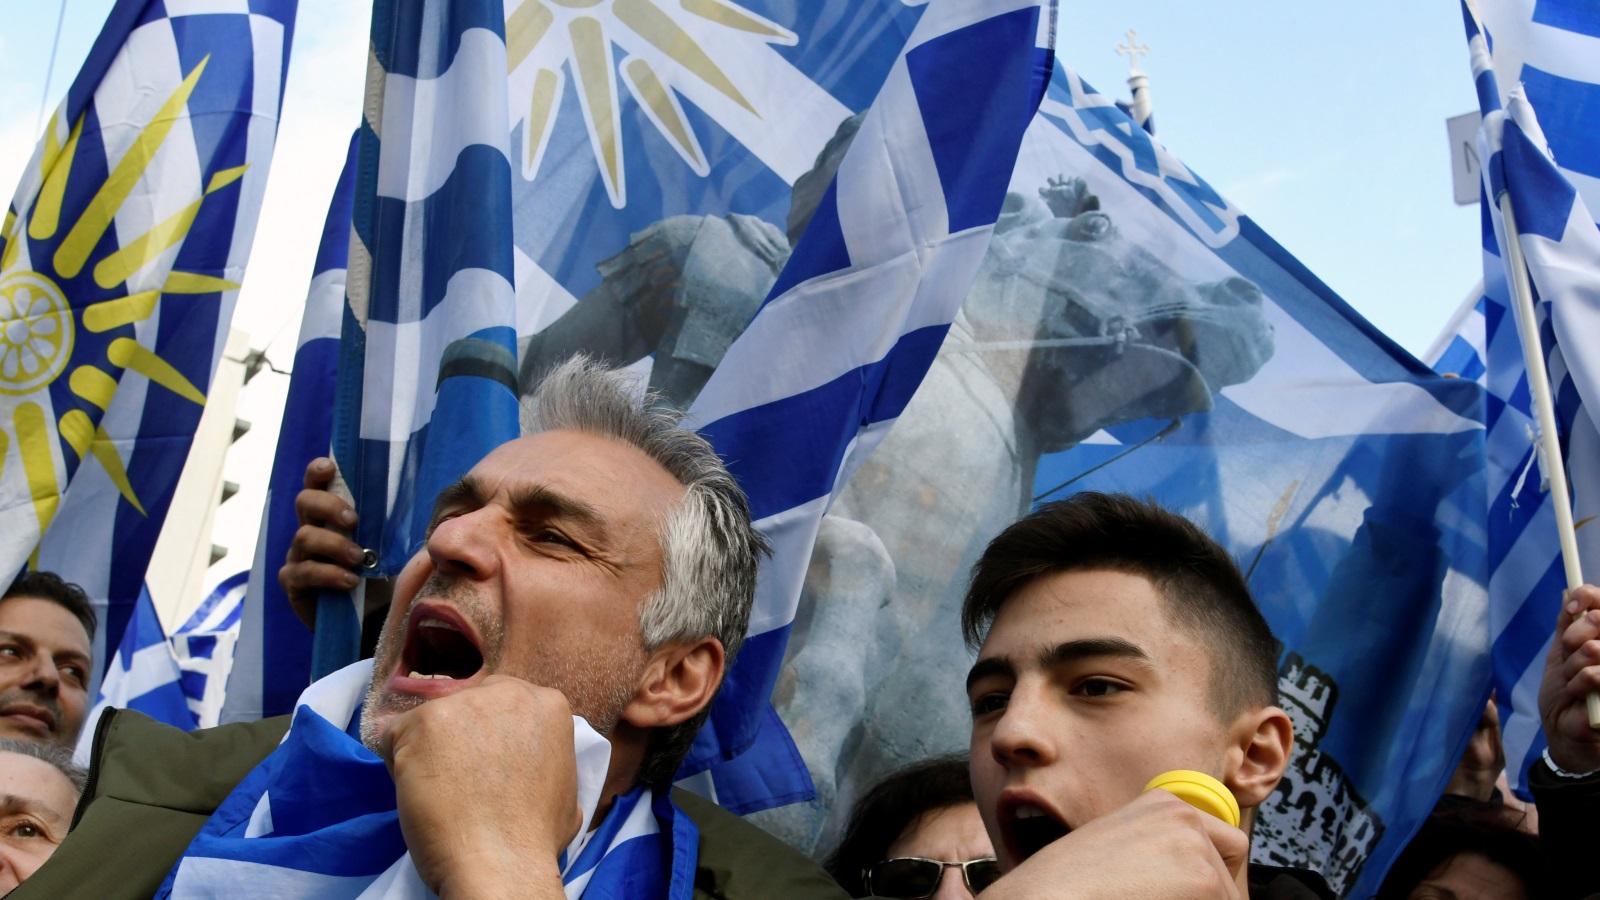 ‪(رويترز)‬ حمل معظم المحتجين الأعلام اليونانية الزرقاء والبيضاء